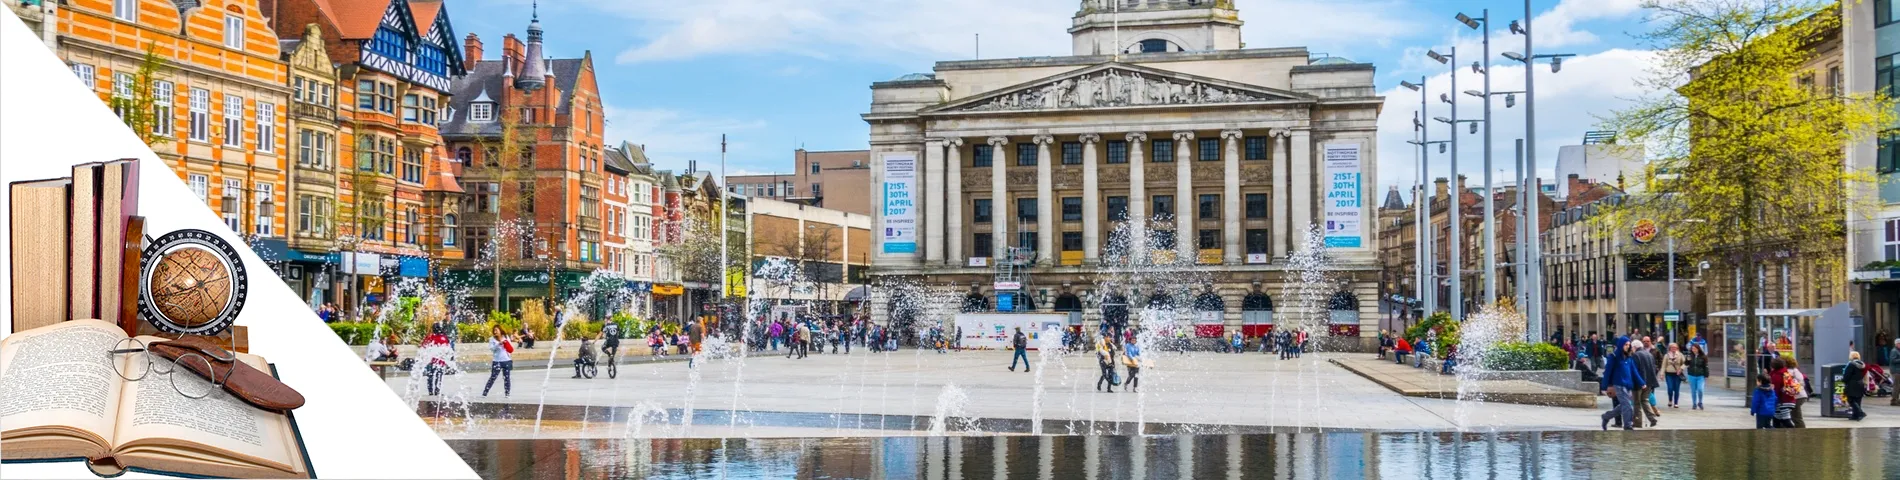 Nottingham - Englisch & Kunst & Literatur